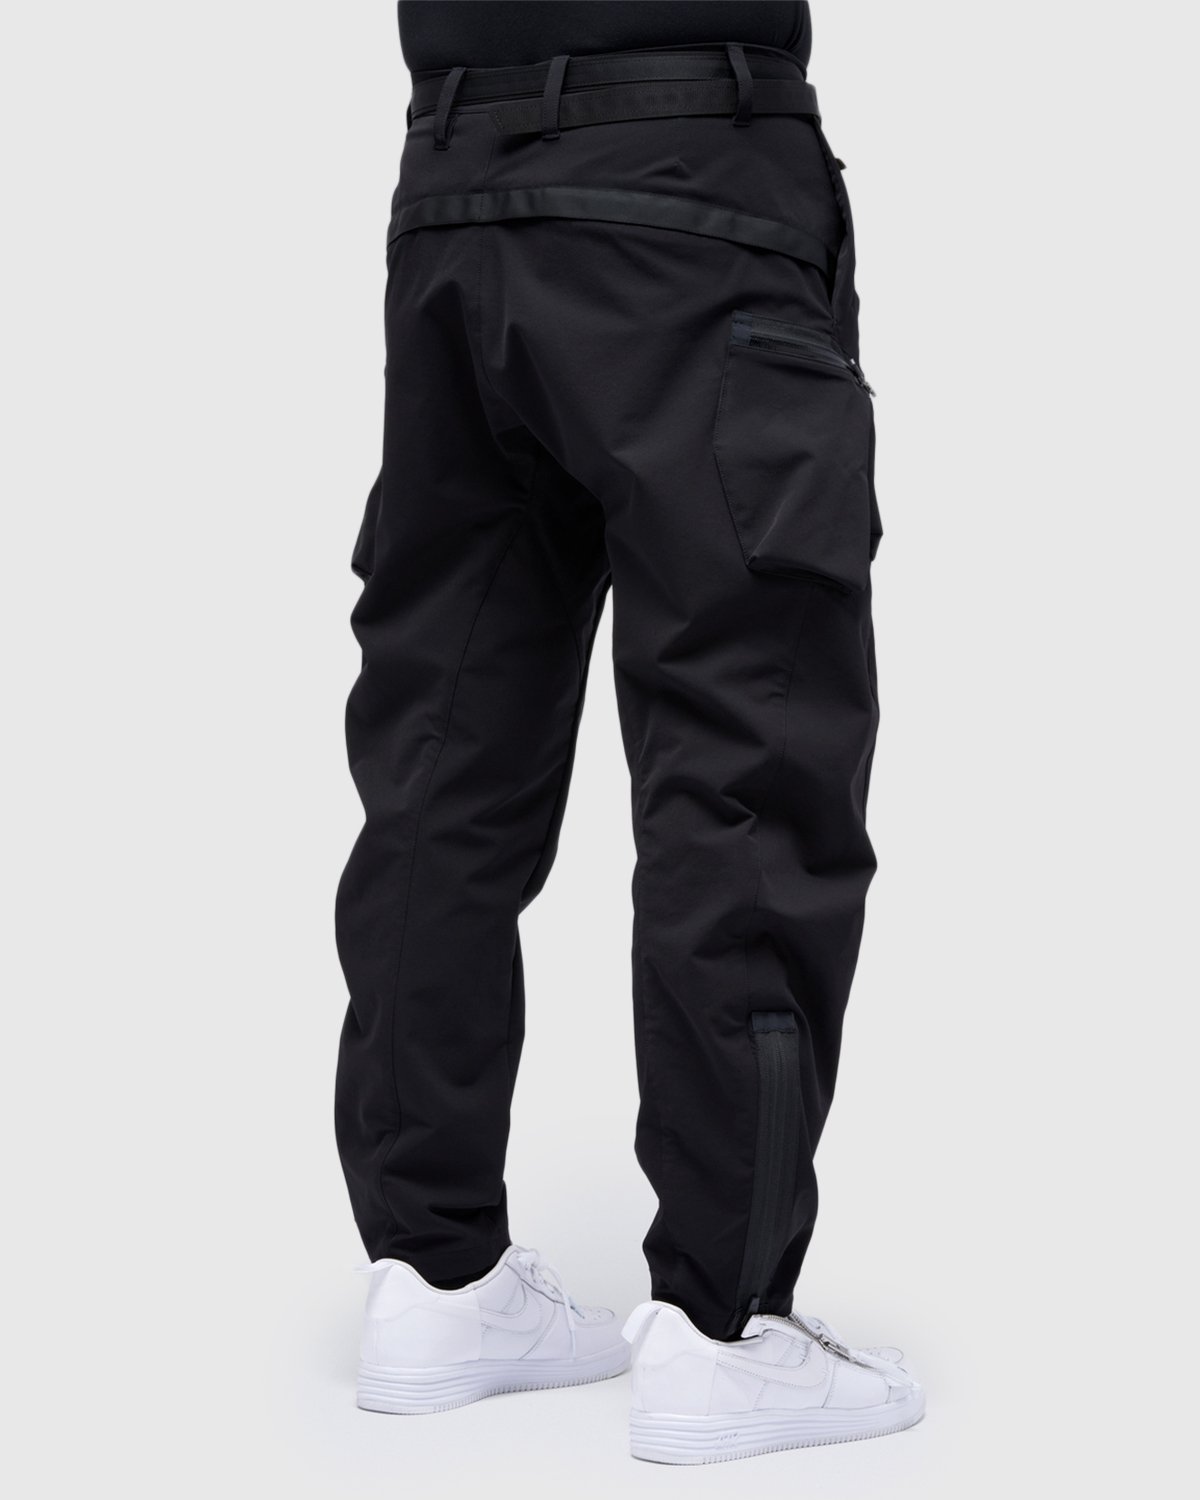 ACRONYM - P41-DS Pant Black - Clothing - Black - Image 9